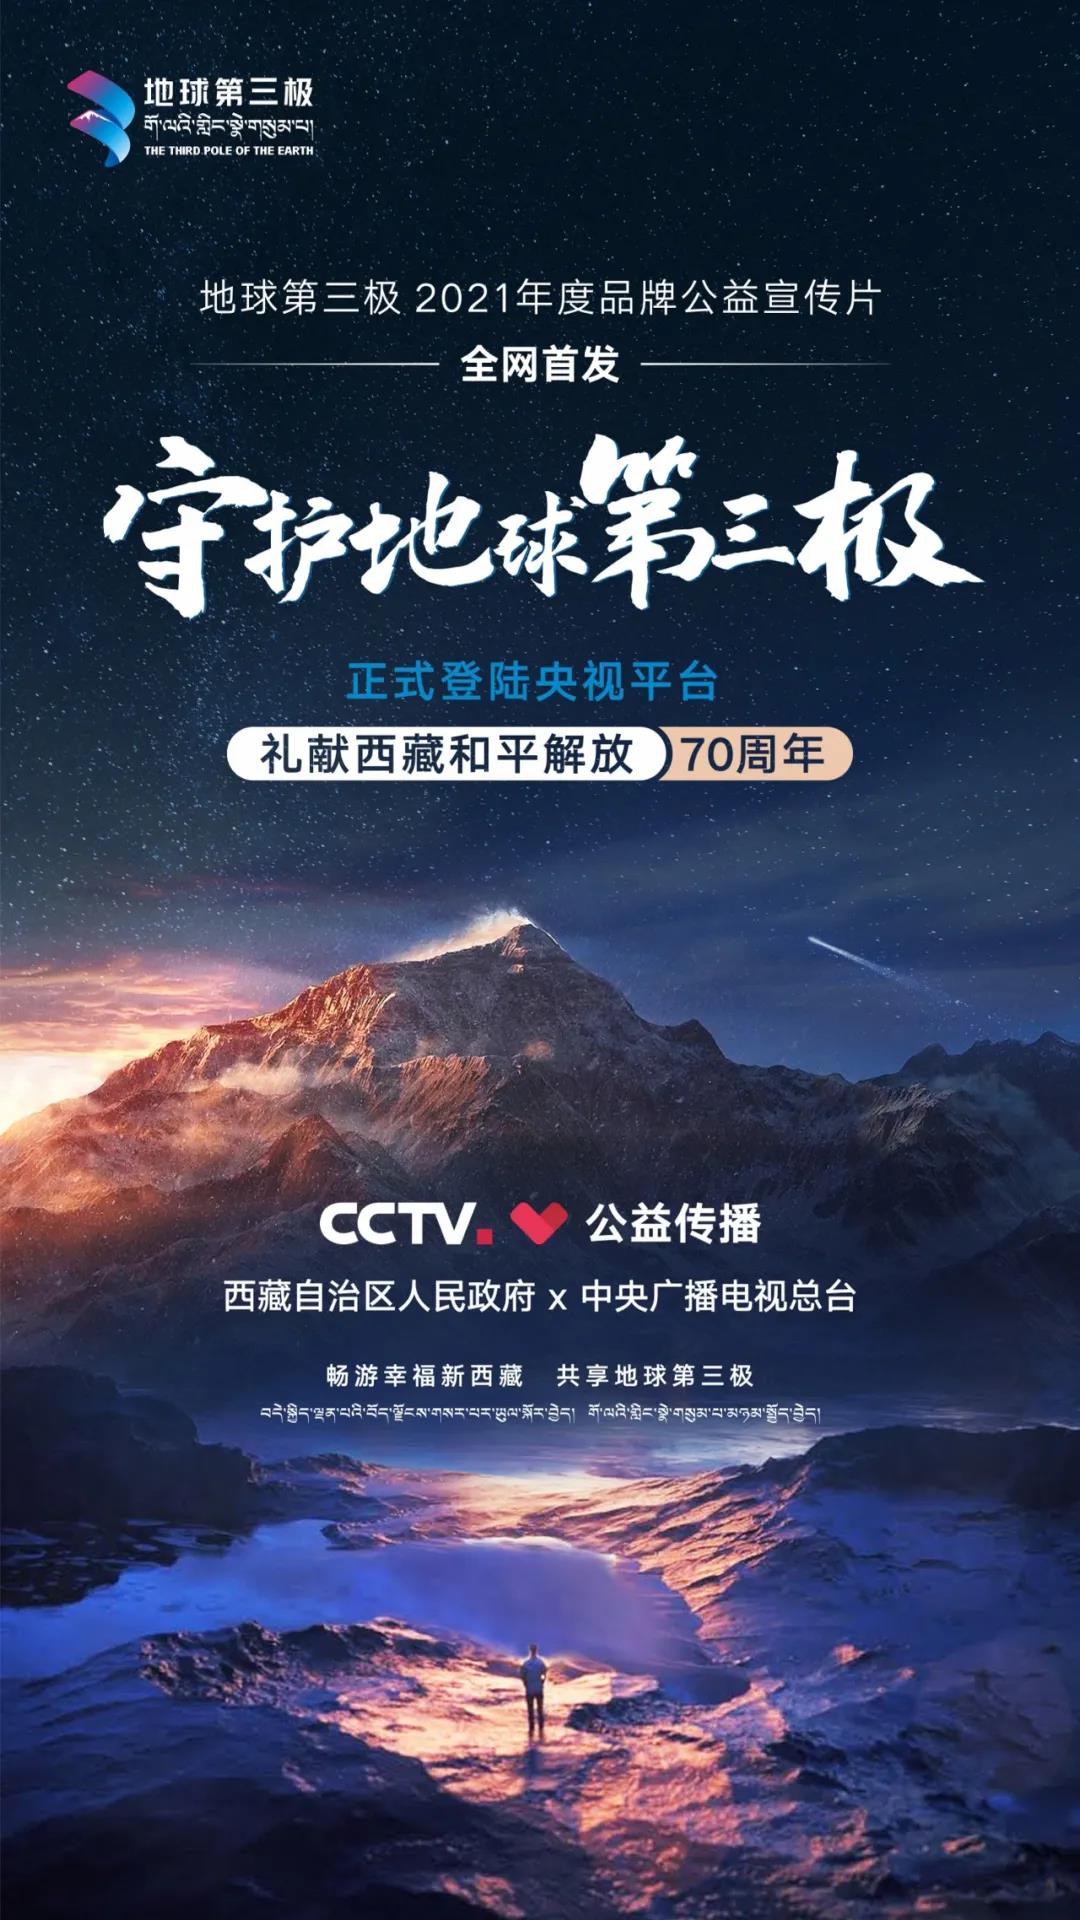 地球第三极品牌宣传片登陆央视，献礼西藏和平解放70周年！